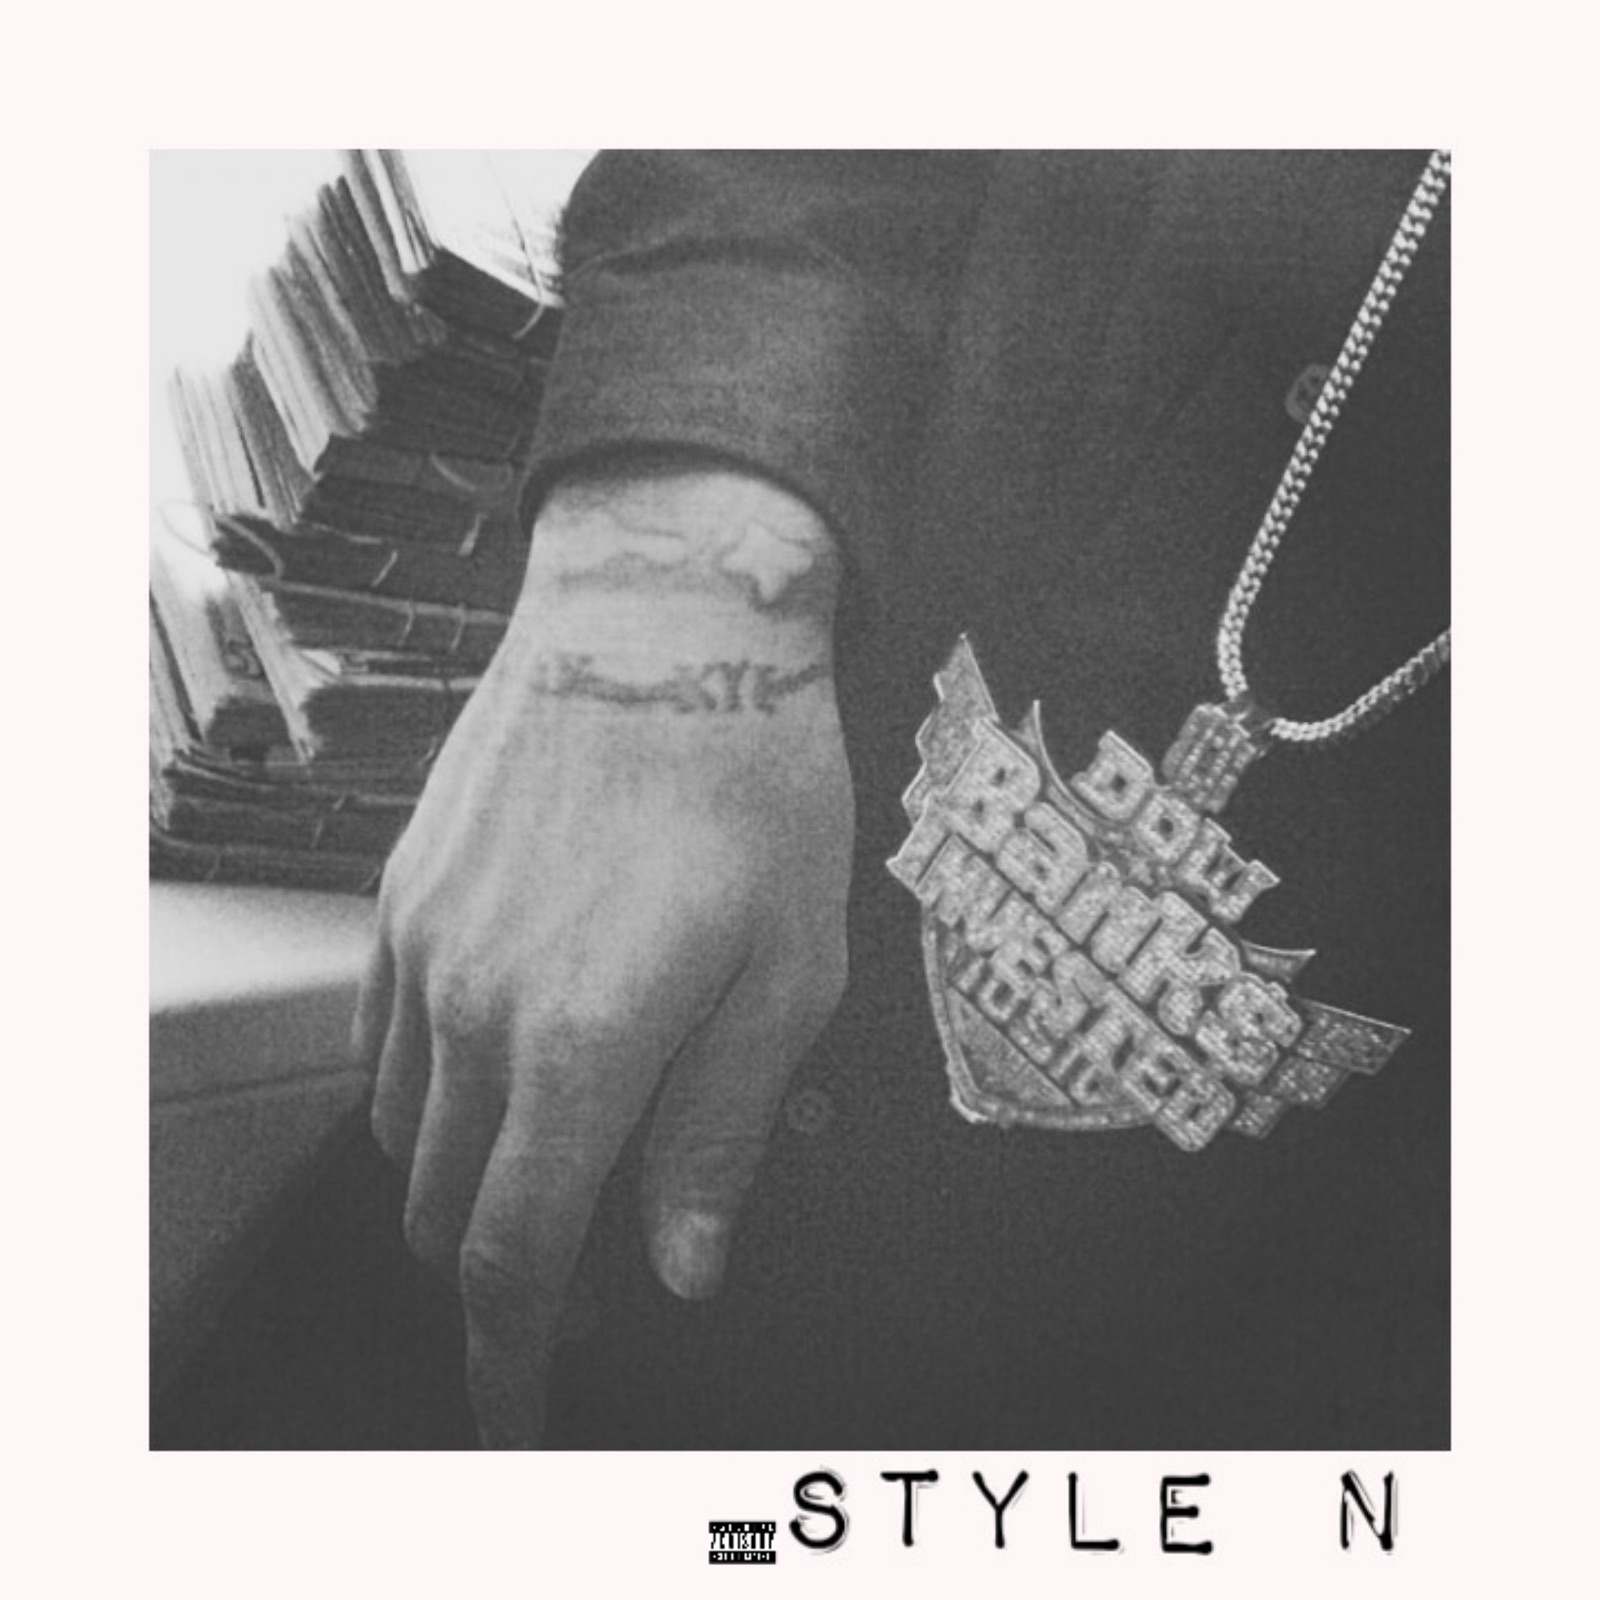 Style N - Single